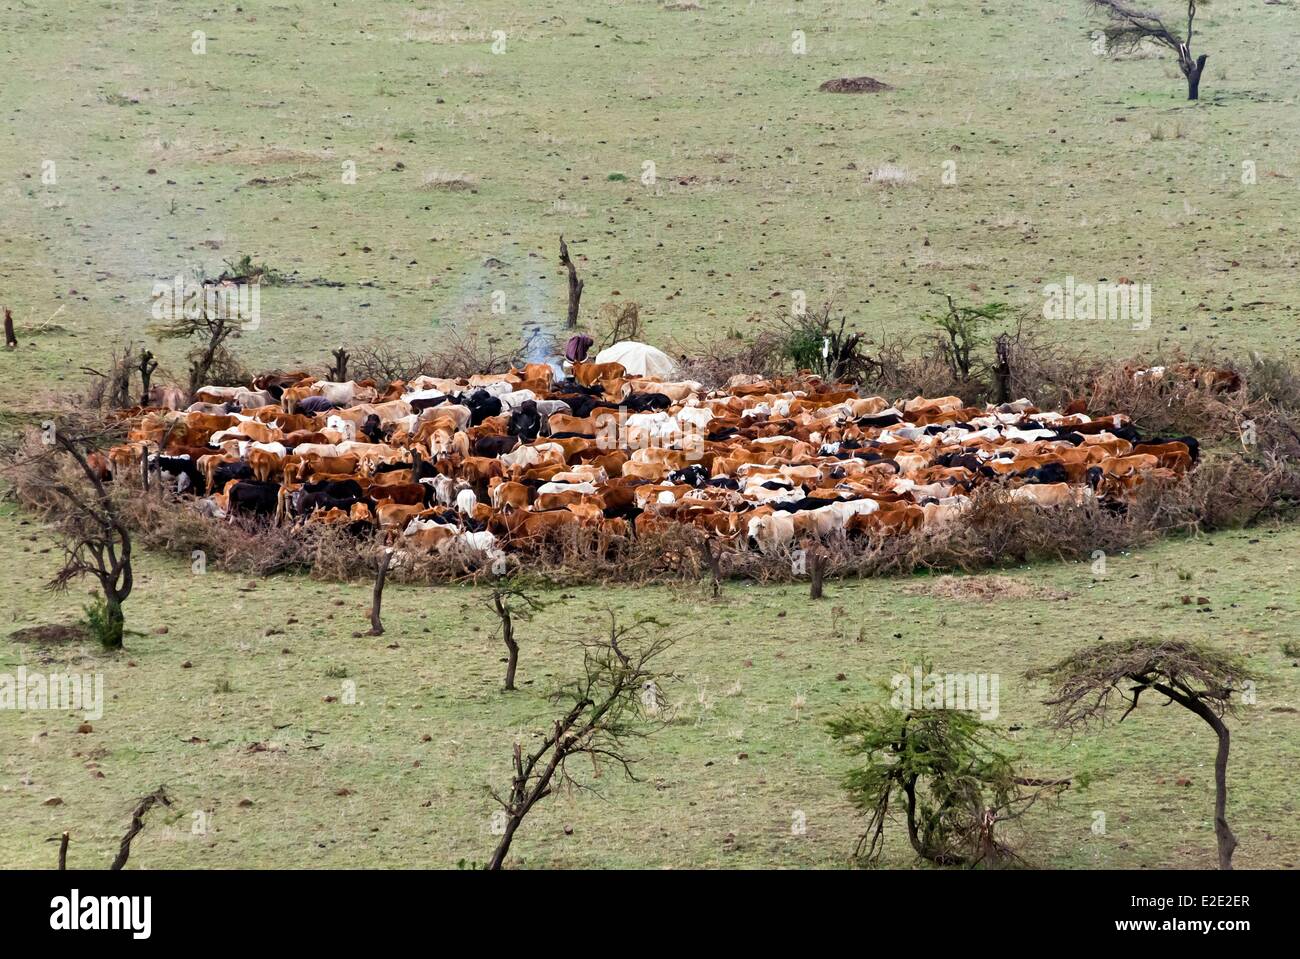 Le Kenya Masai Mara la réserve nationale de Masai Mara Conservancy (Masai) Maasai boma et Mboma ou clôture vaches Banque D'Images